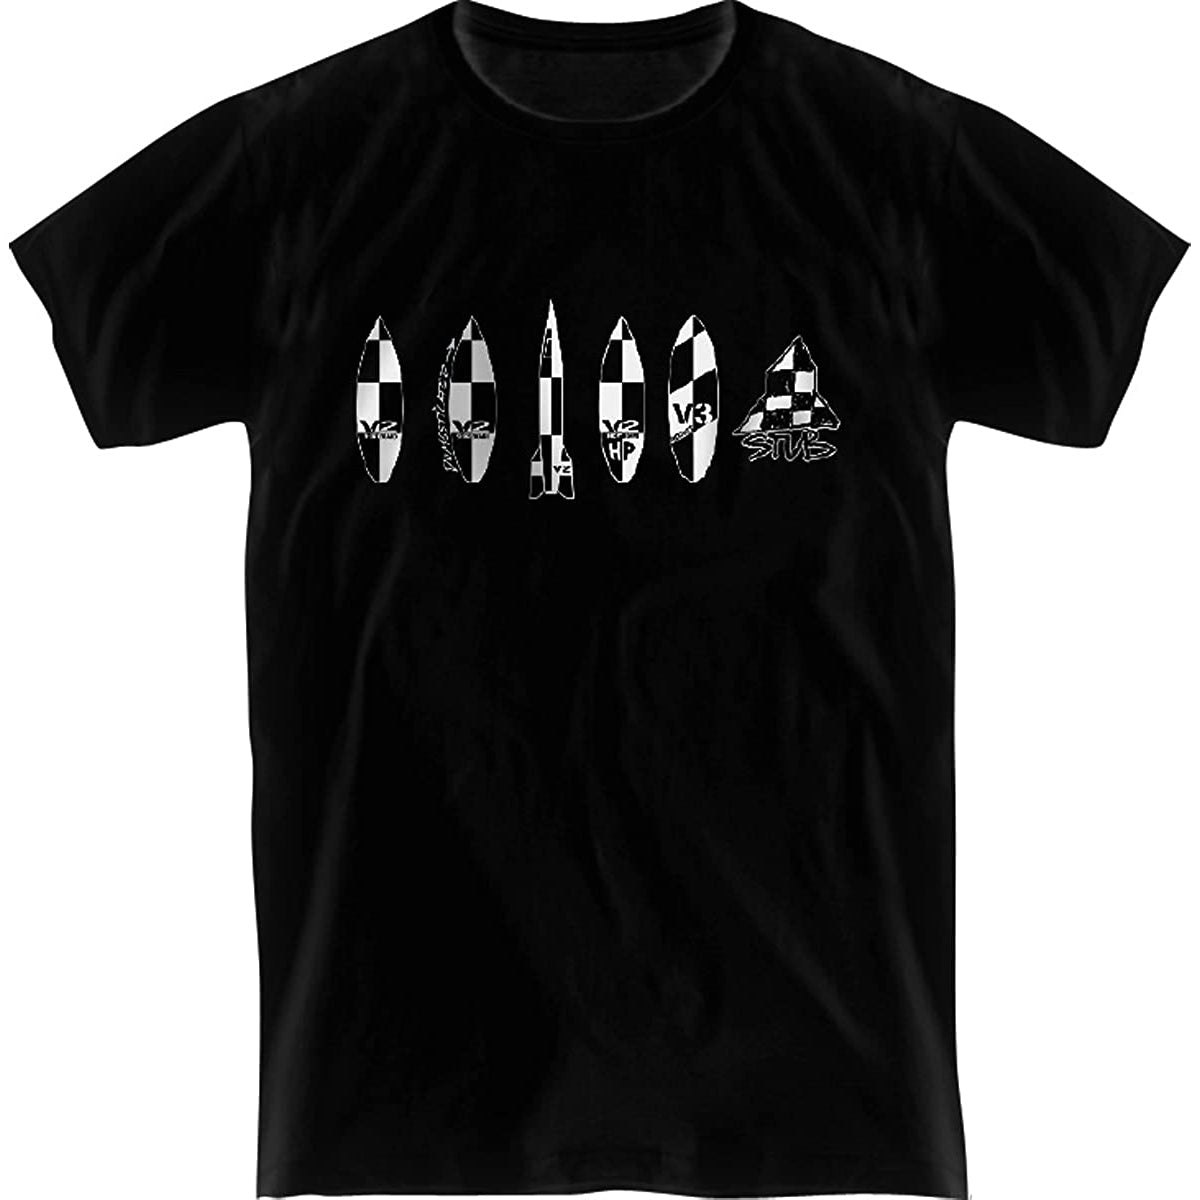 Lost V2 Family Men's Short-Sleeve Shirts Brand New-LT153783